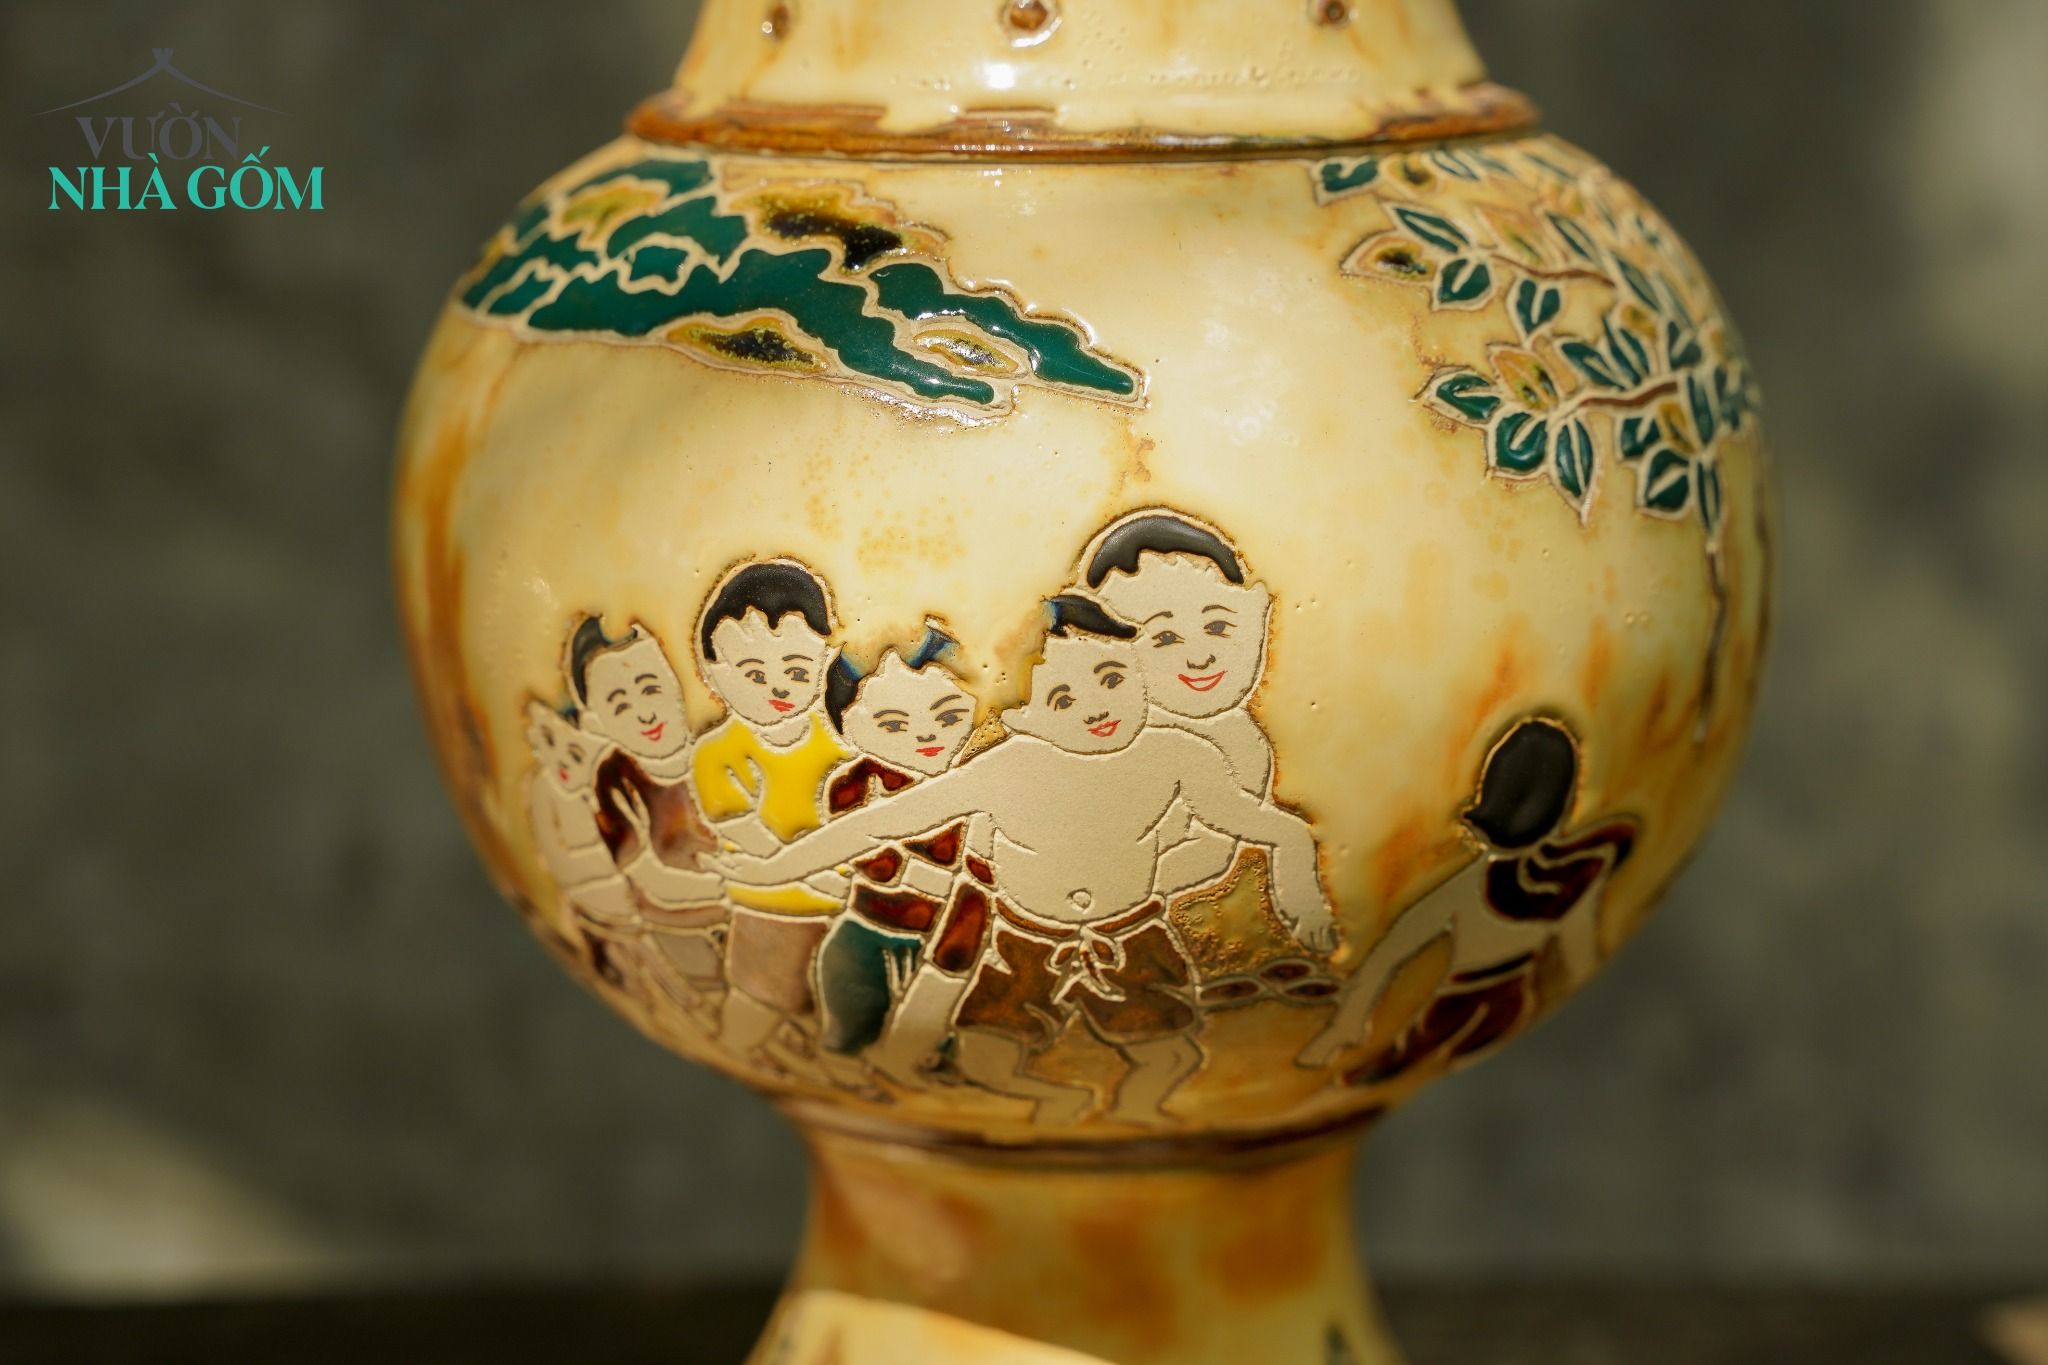  Bình gốm sáng tác độc bản, nghệ nhân Dương Minh Tâm, Xưởng Thủ Biên 